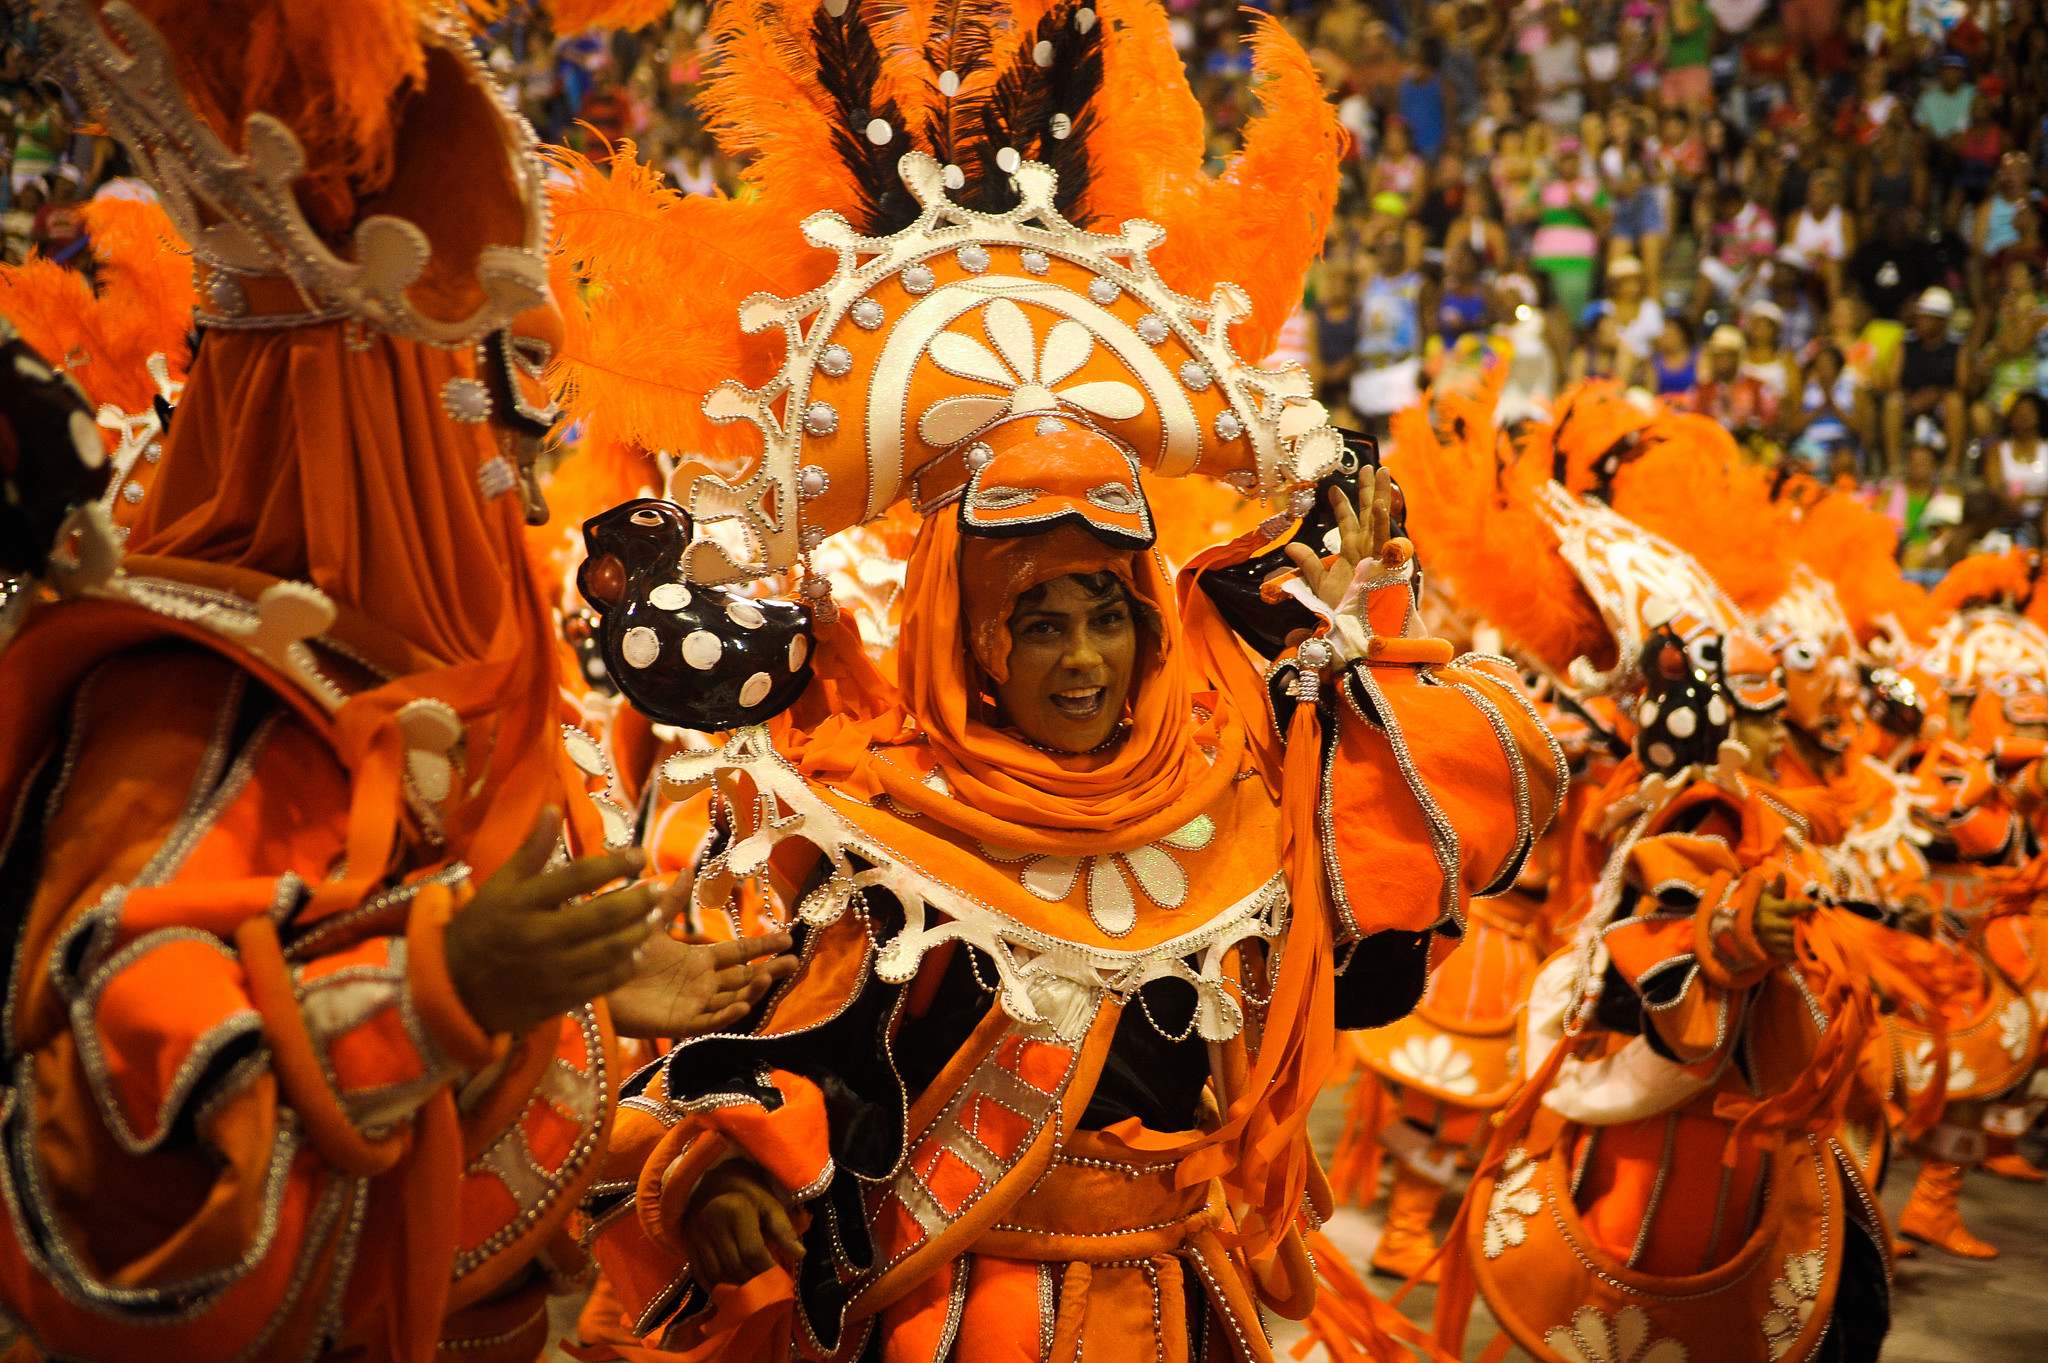 rio de janeiro 20163 Vila Isabel at Carnival in Rio de Janeiro